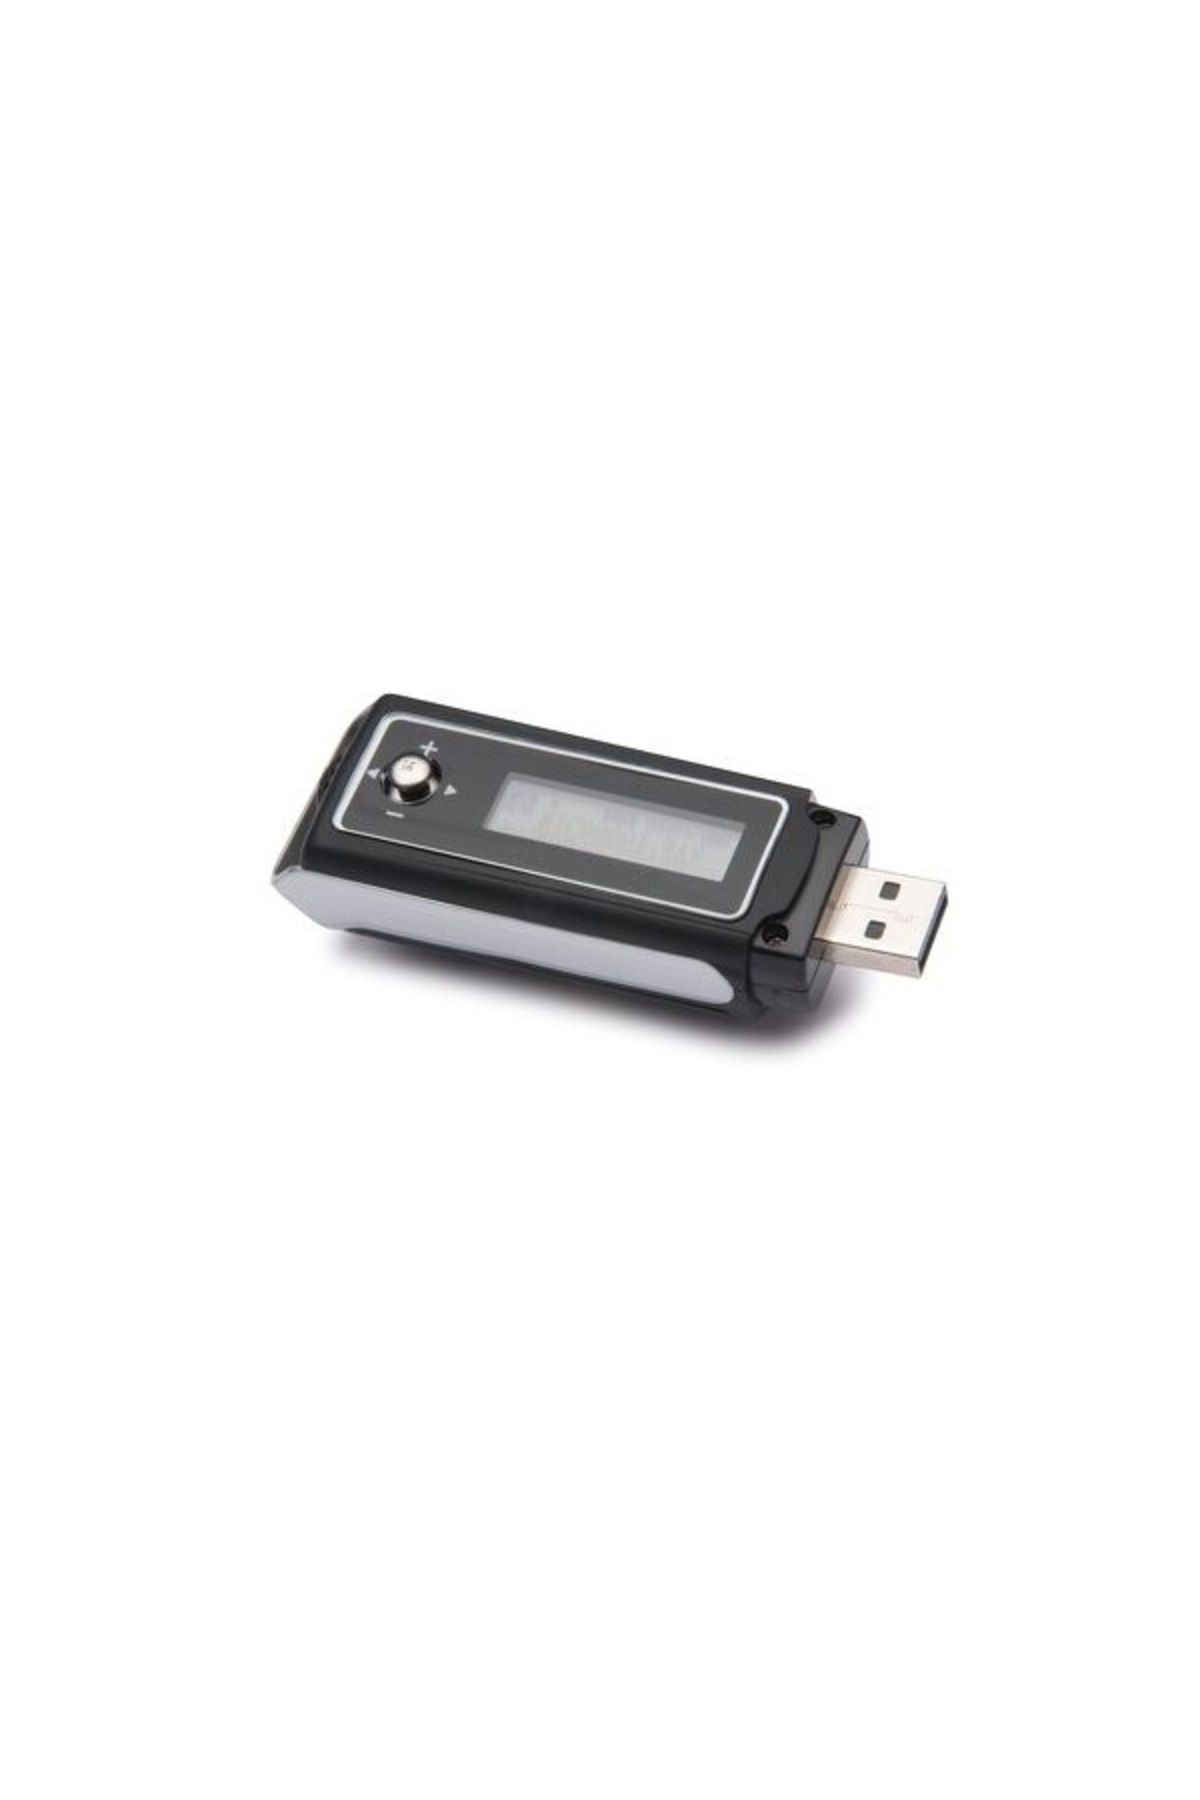 GoldMaster MP3-194 4GB MP3 USB Müzik Çalar